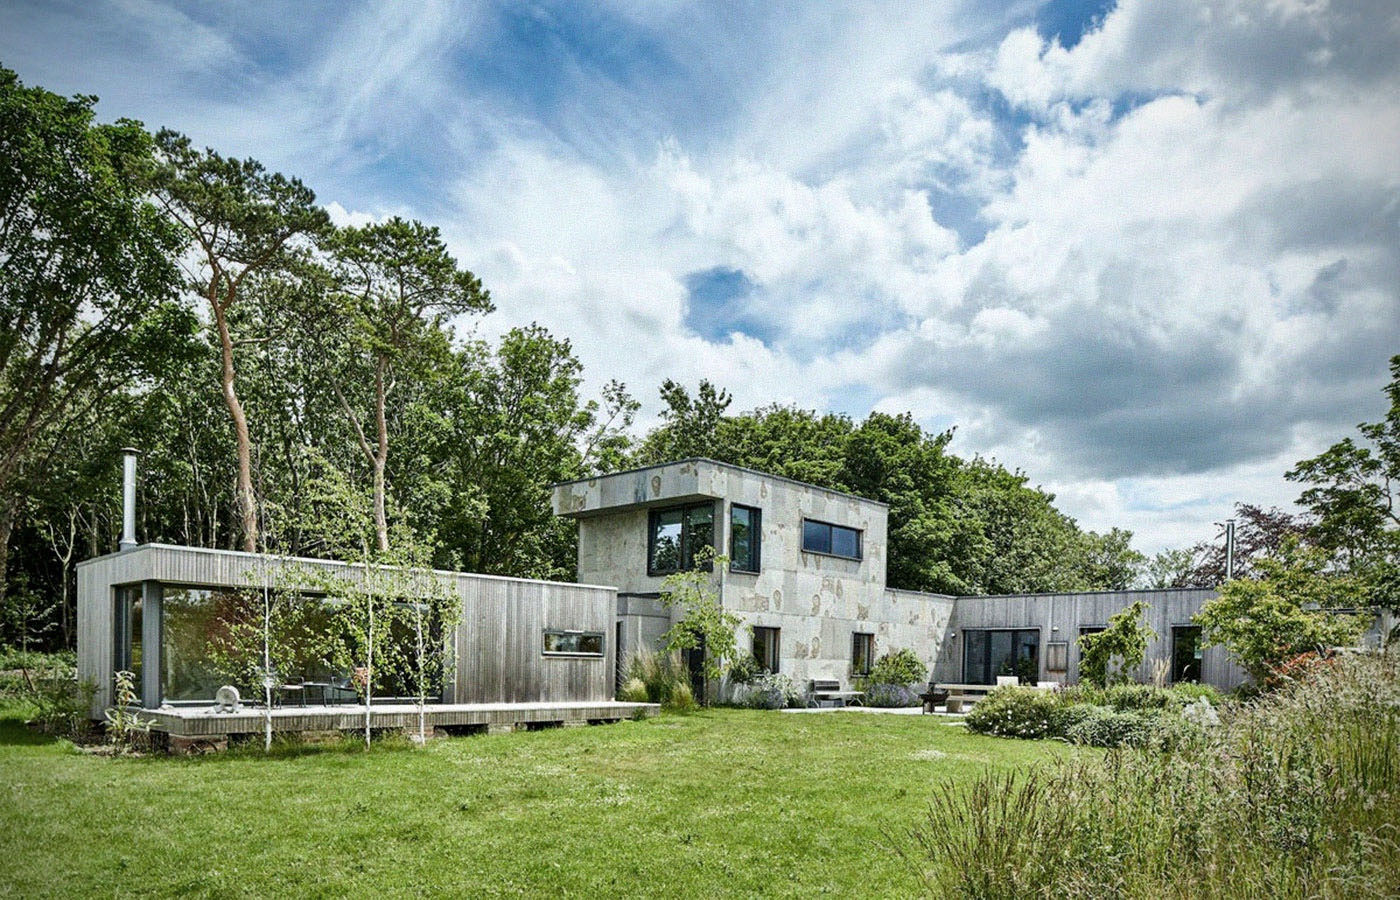 Дом Рейчел Каск по ее собственному дизайну, Норфолк, Англия. Источник: Literary Hub